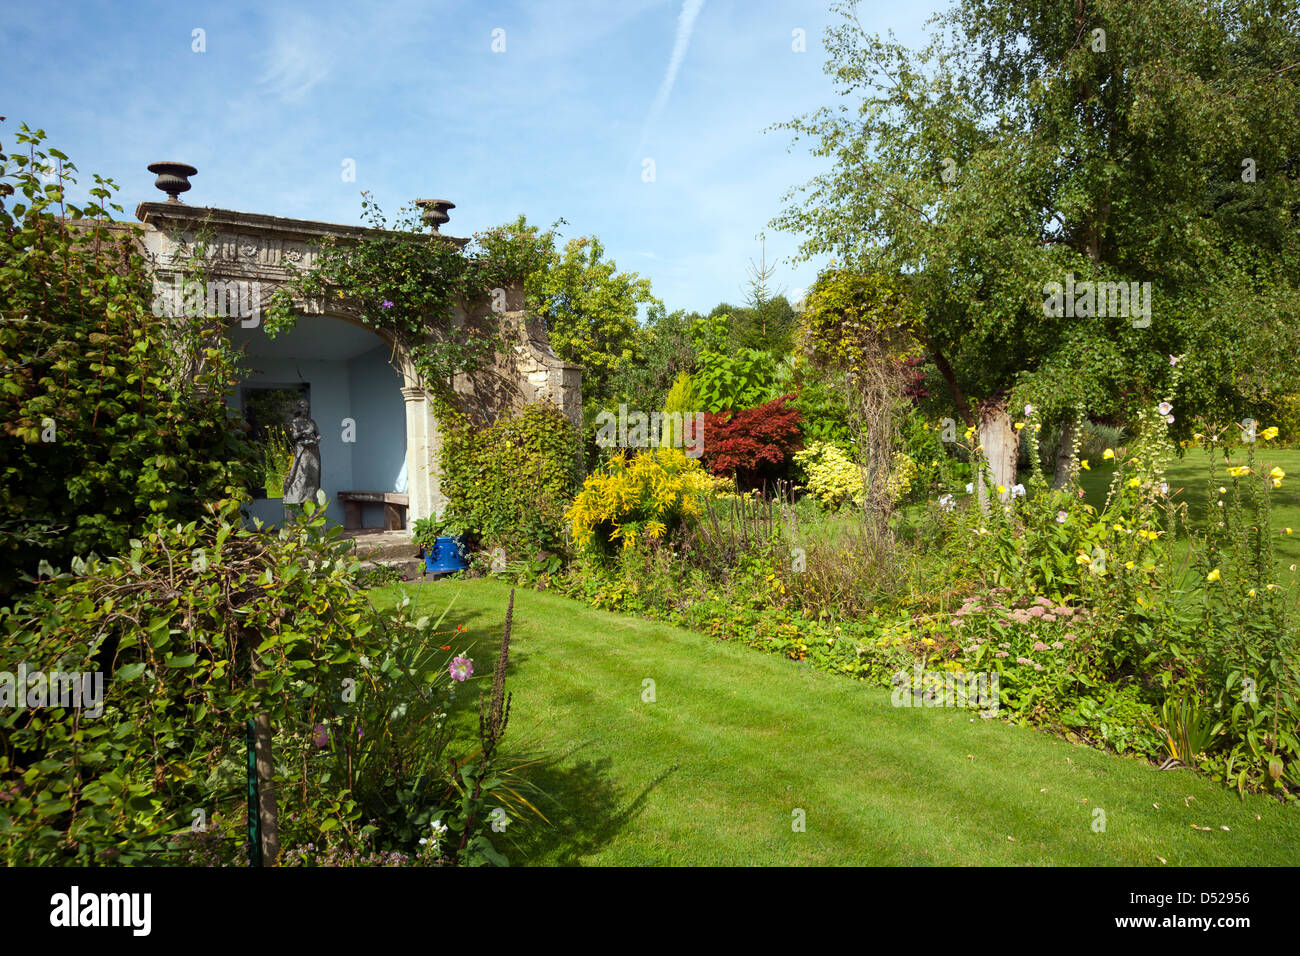 UK gardens. Un jardin mature avec parterres, arbres, arbustes d'une période d'architecture grotto. Banque D'Images